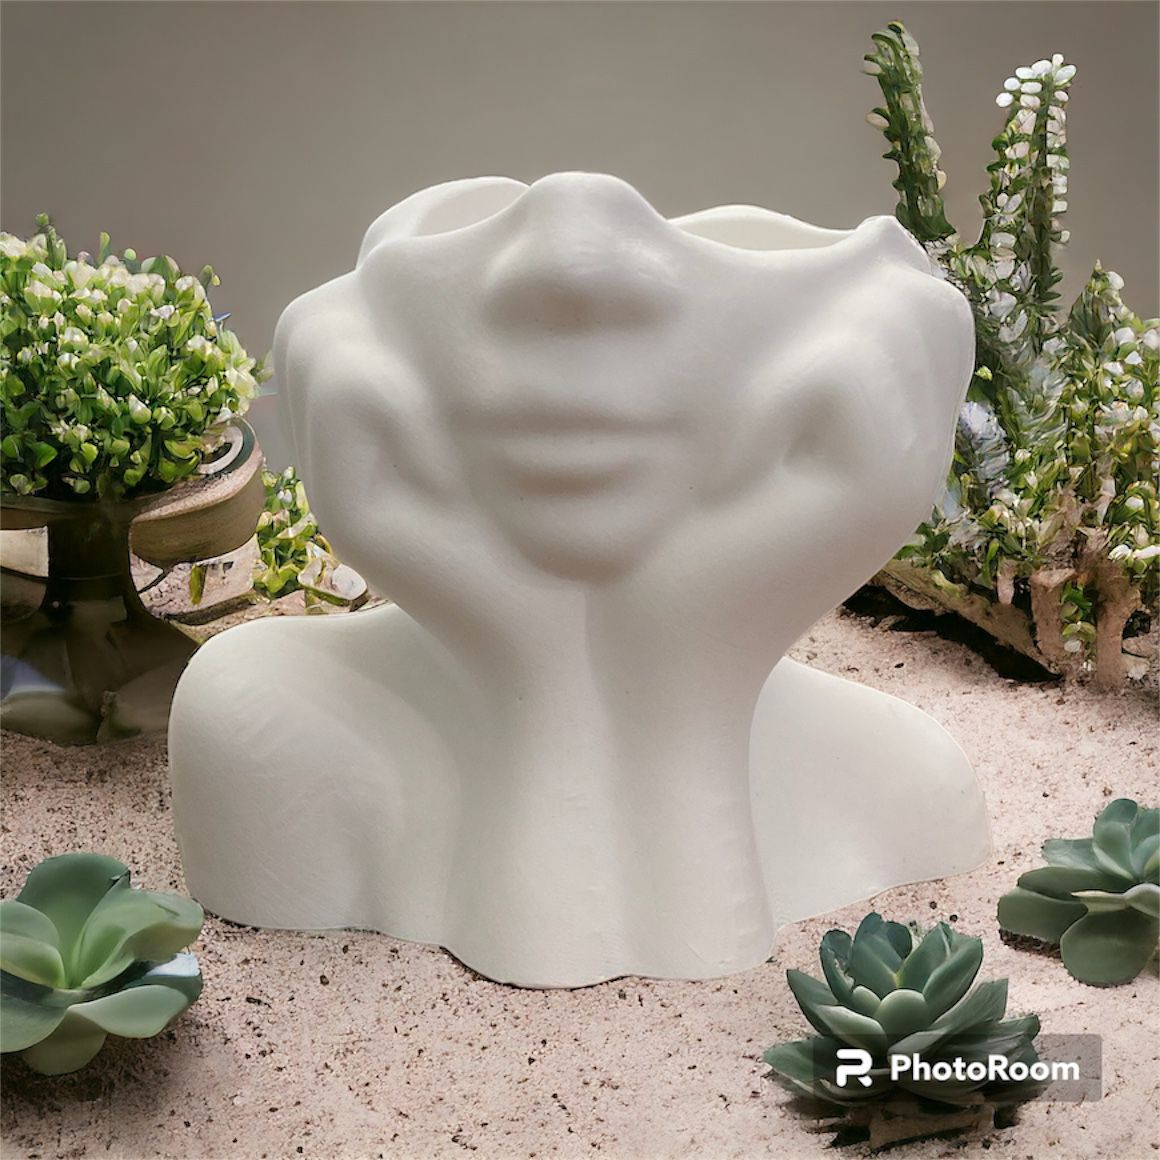 Minimalist Woman’s Face Vase 